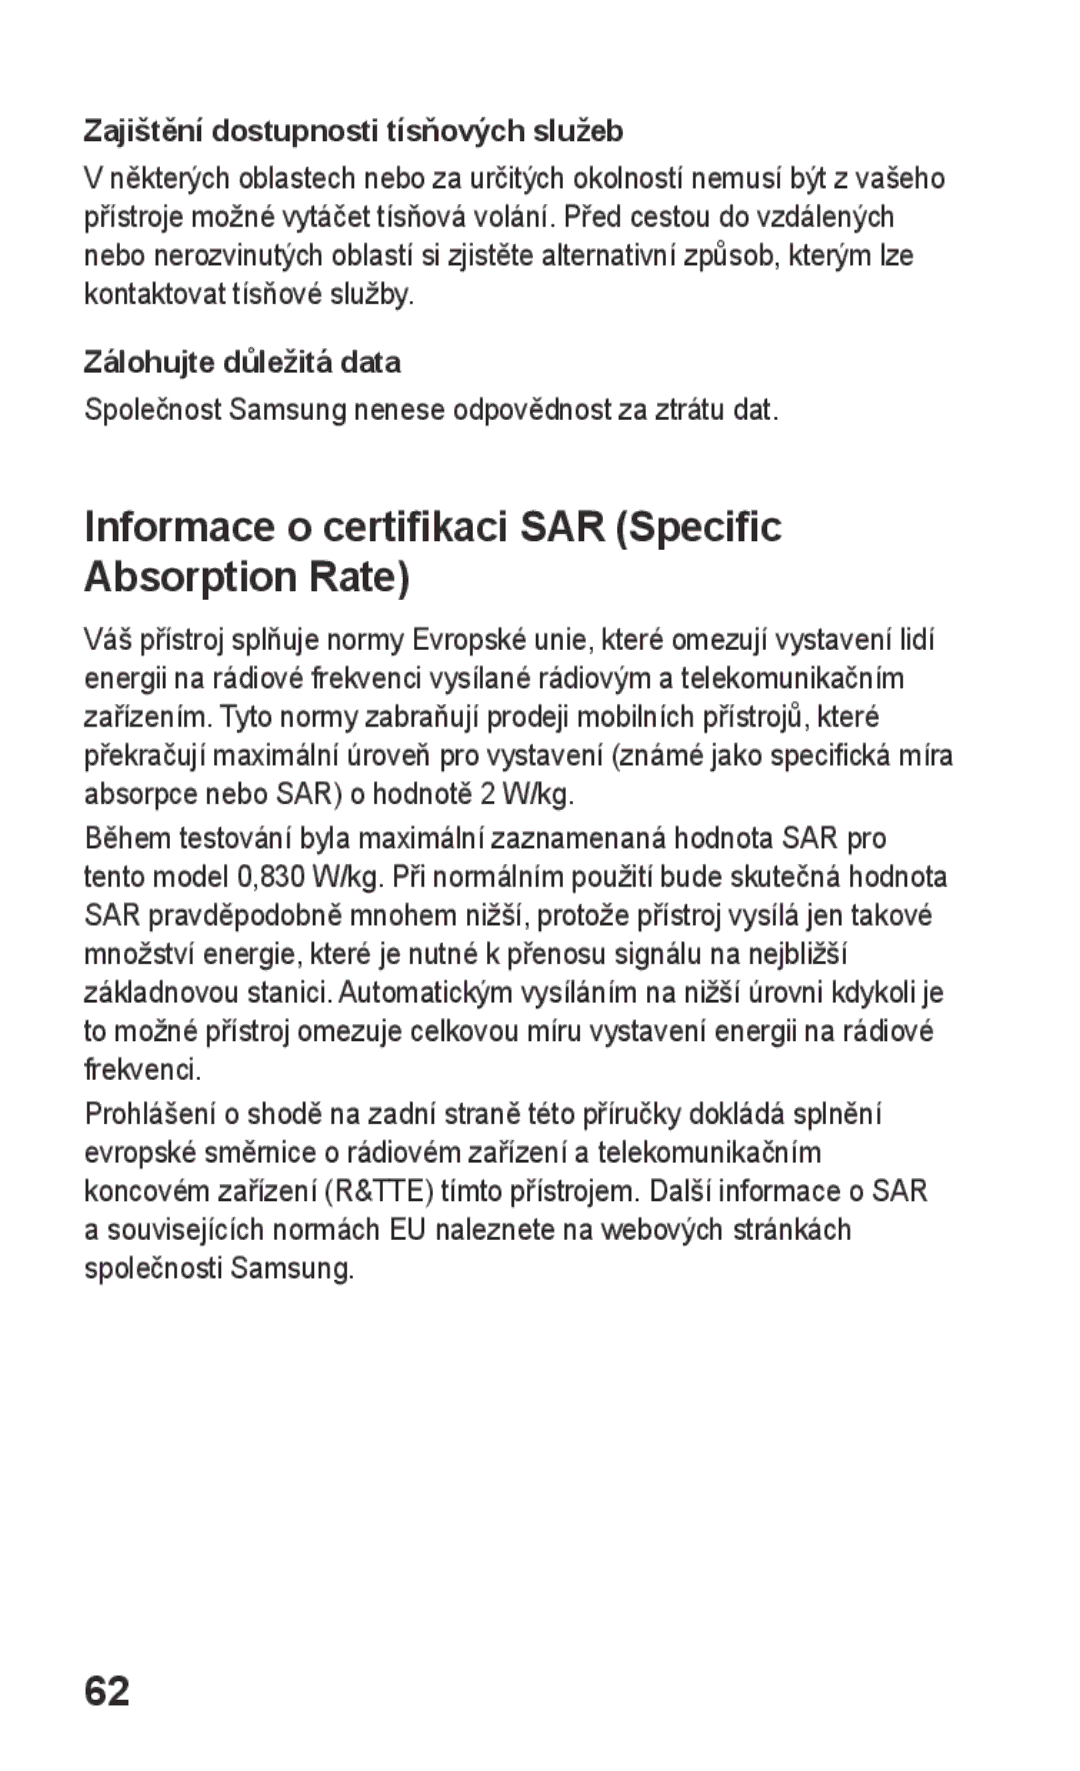 Samsung GT-E2652DKWXEZ manual Informace o certifikaci SAR Specific Absorption Rate, Zajištění dostupnosti tísňových služeb 